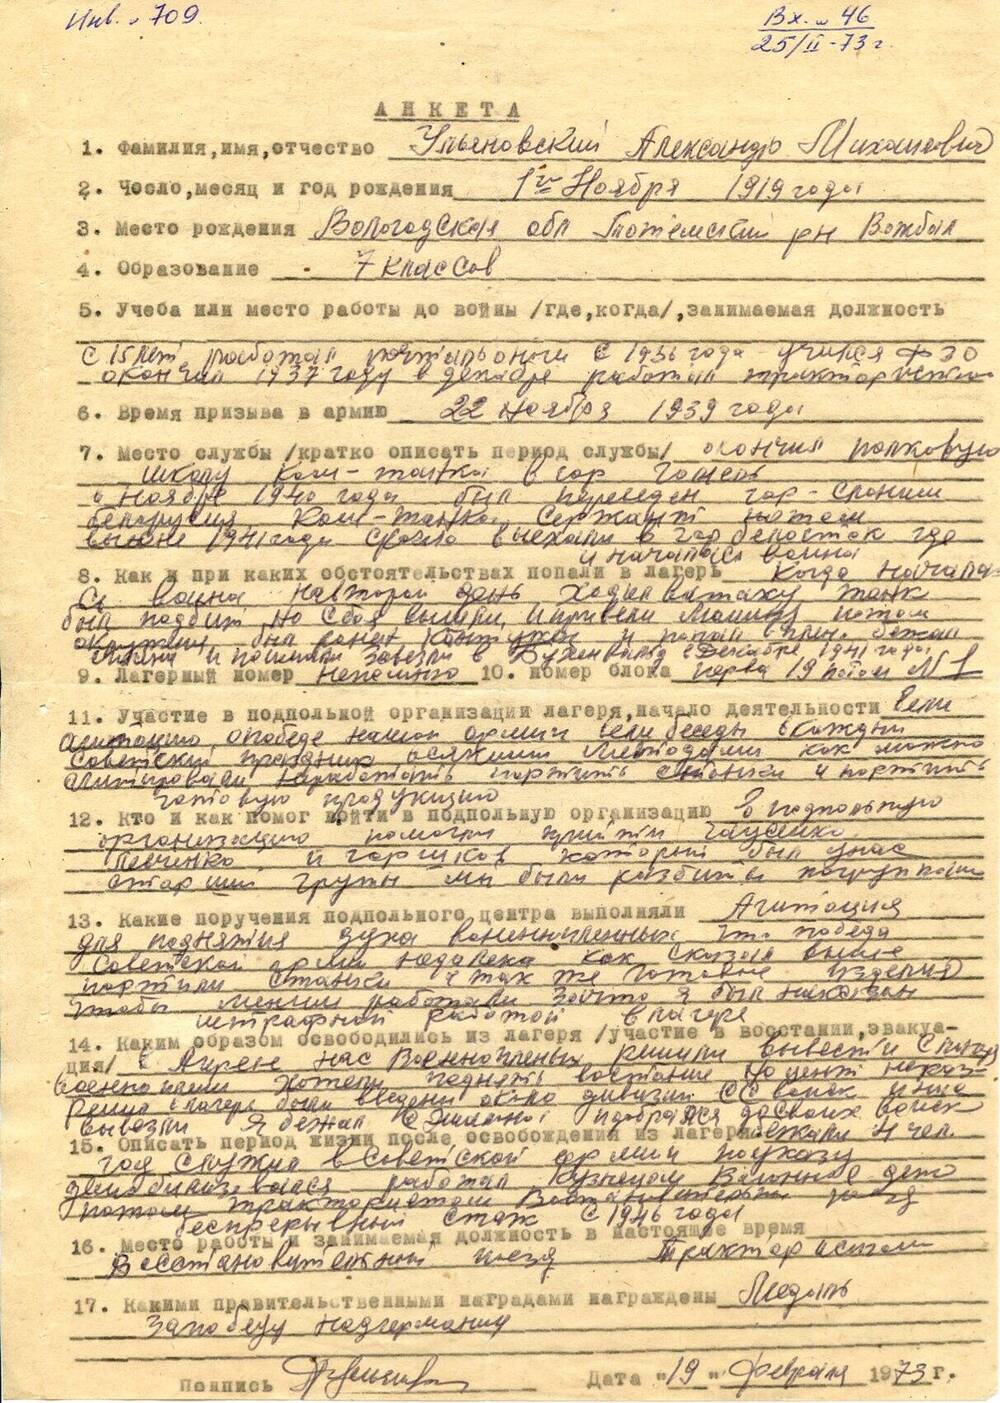 Анкета Ульяновского Александра Михайловича, бывшего узника концлагеря Бухенвальд, с краткими биографическими данными.